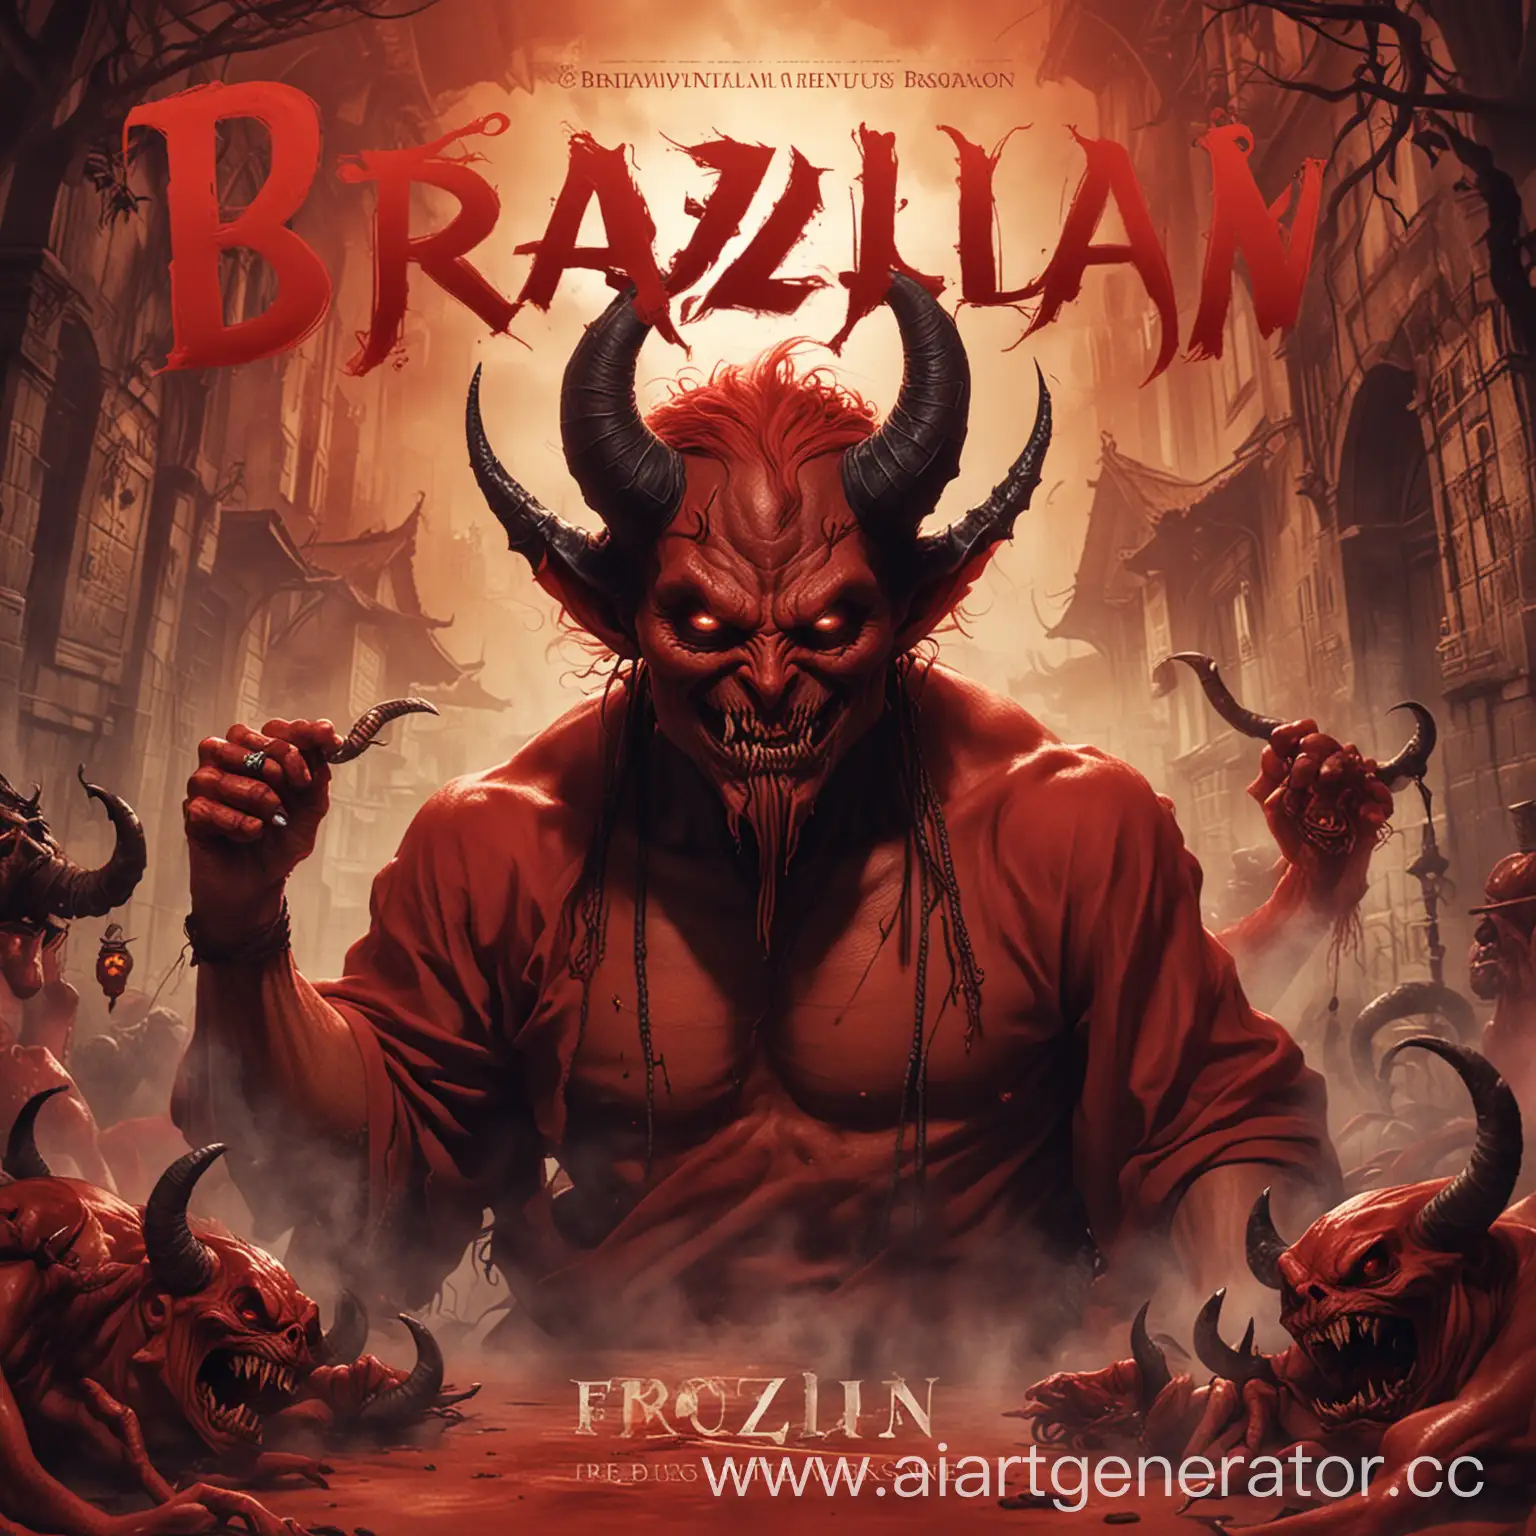 обложка к бразильскому фонку красный фонк с демоном